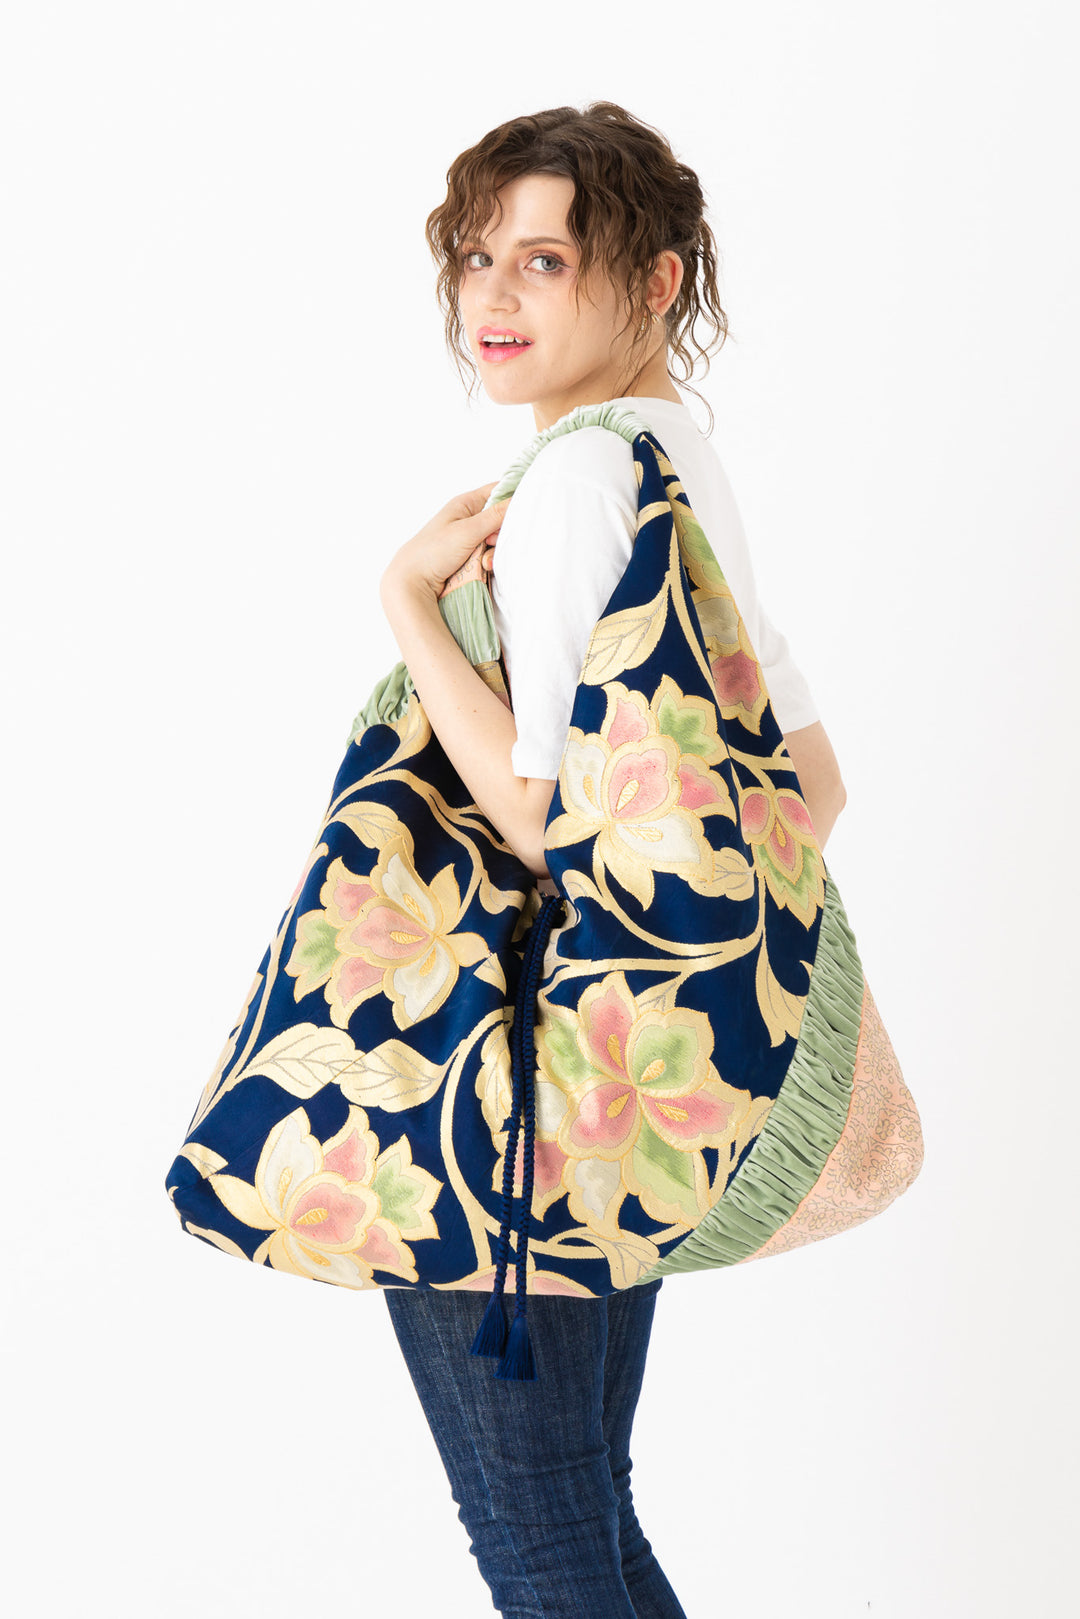 handbag for Girl tassel handbag Japanese style women's bag kimono